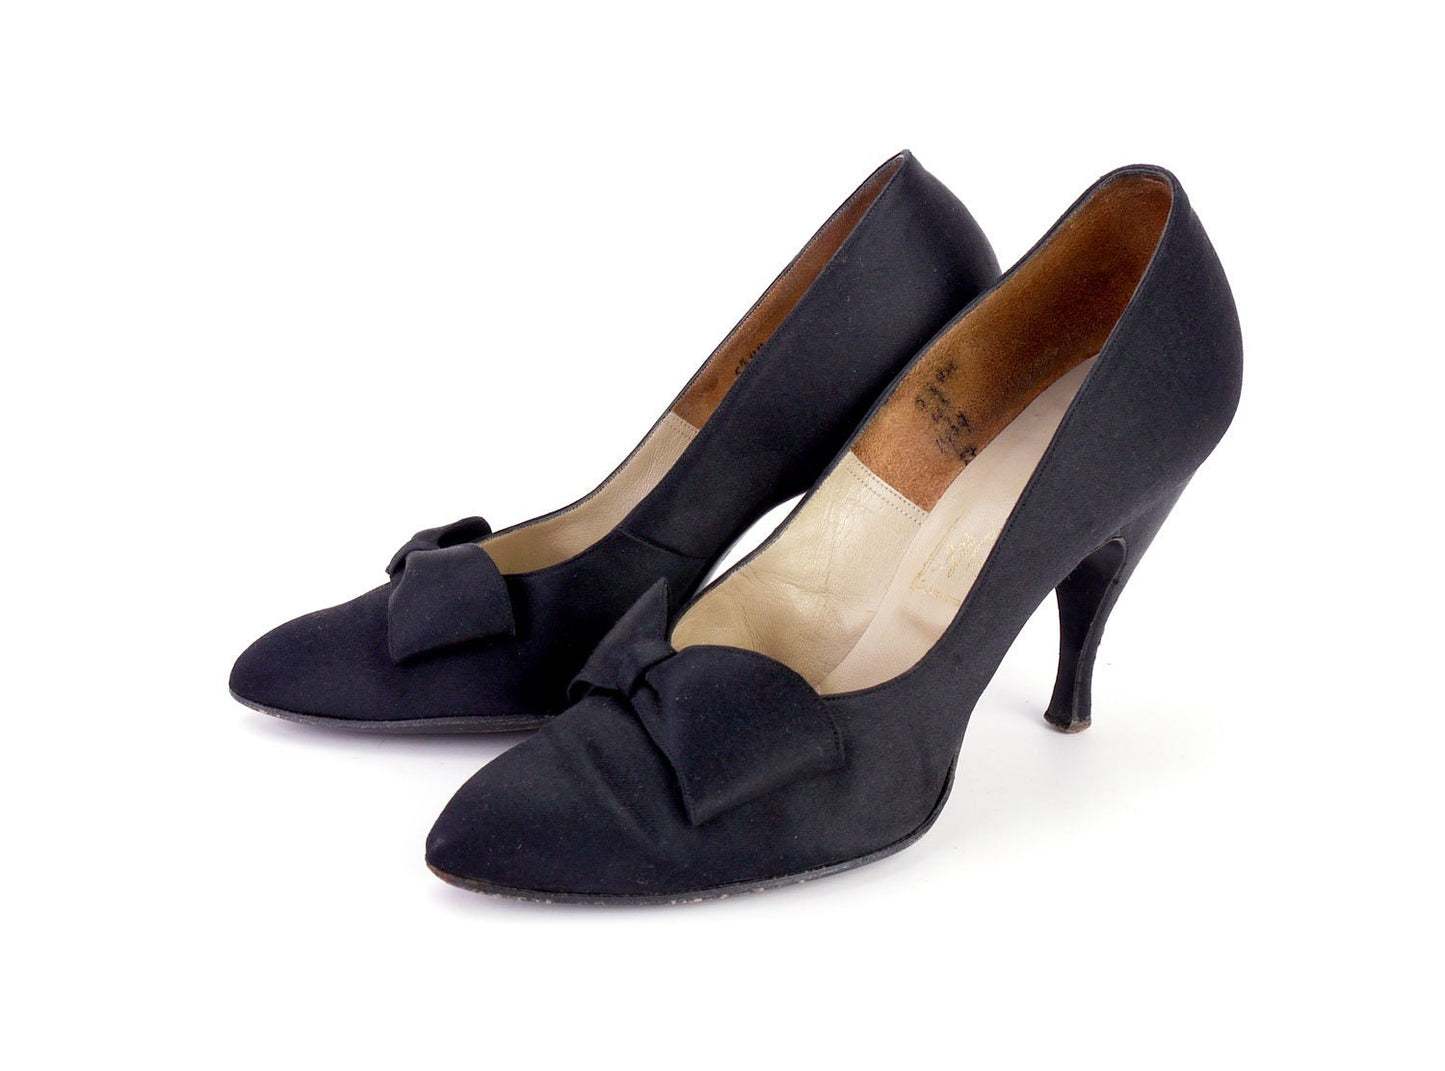 Superb 1950s Black Satin Pumps Shoes by Les Jumelles UK 3